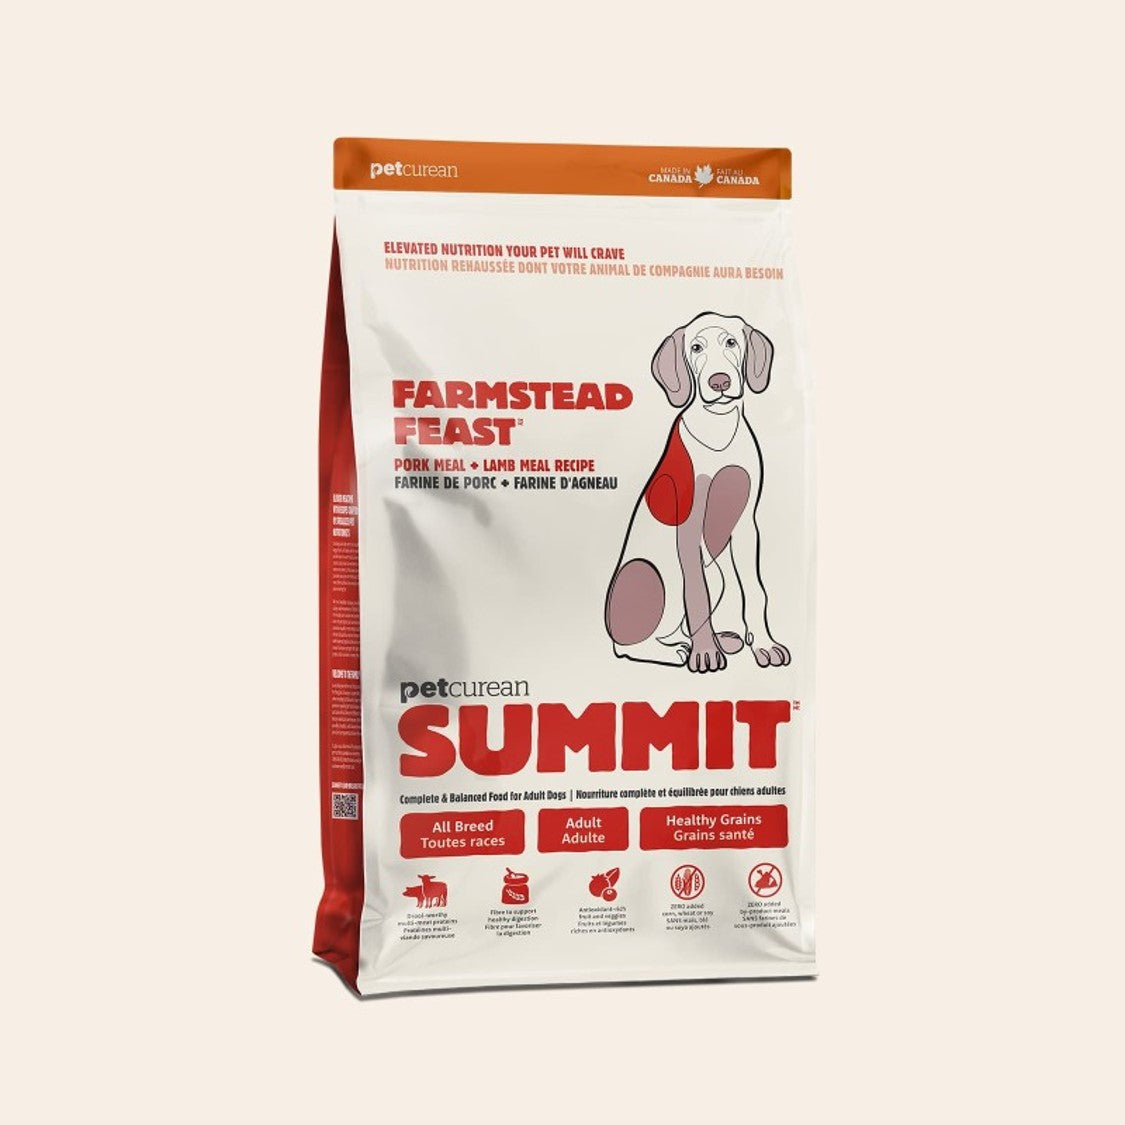 Petcurean Summit - Farmstead Feast Dry Dog Food